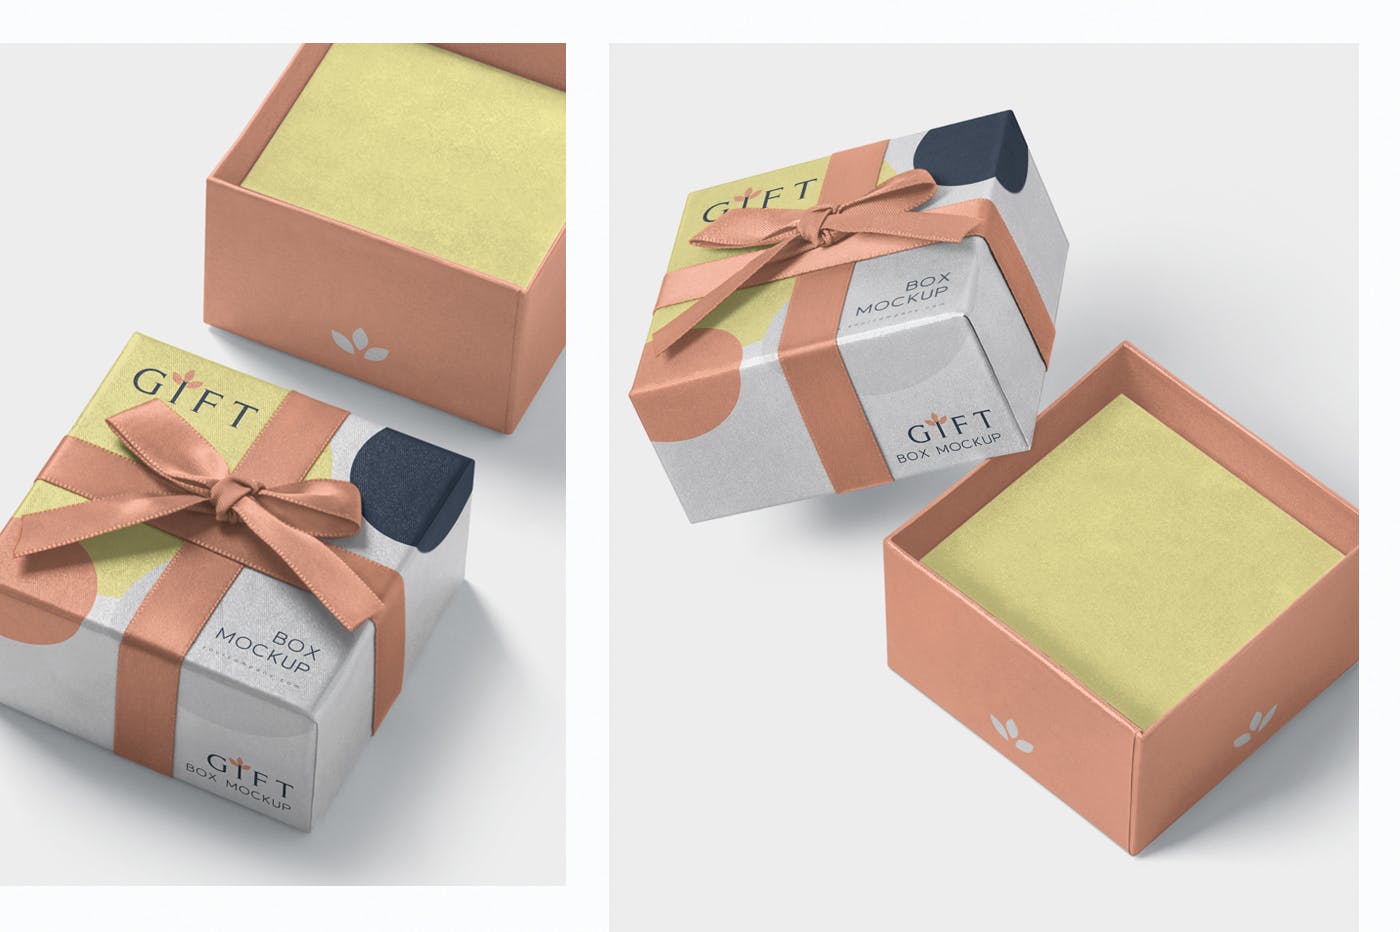 高档礼品包装盒外观设计样机模板 Gift Box Mockups插图(1)